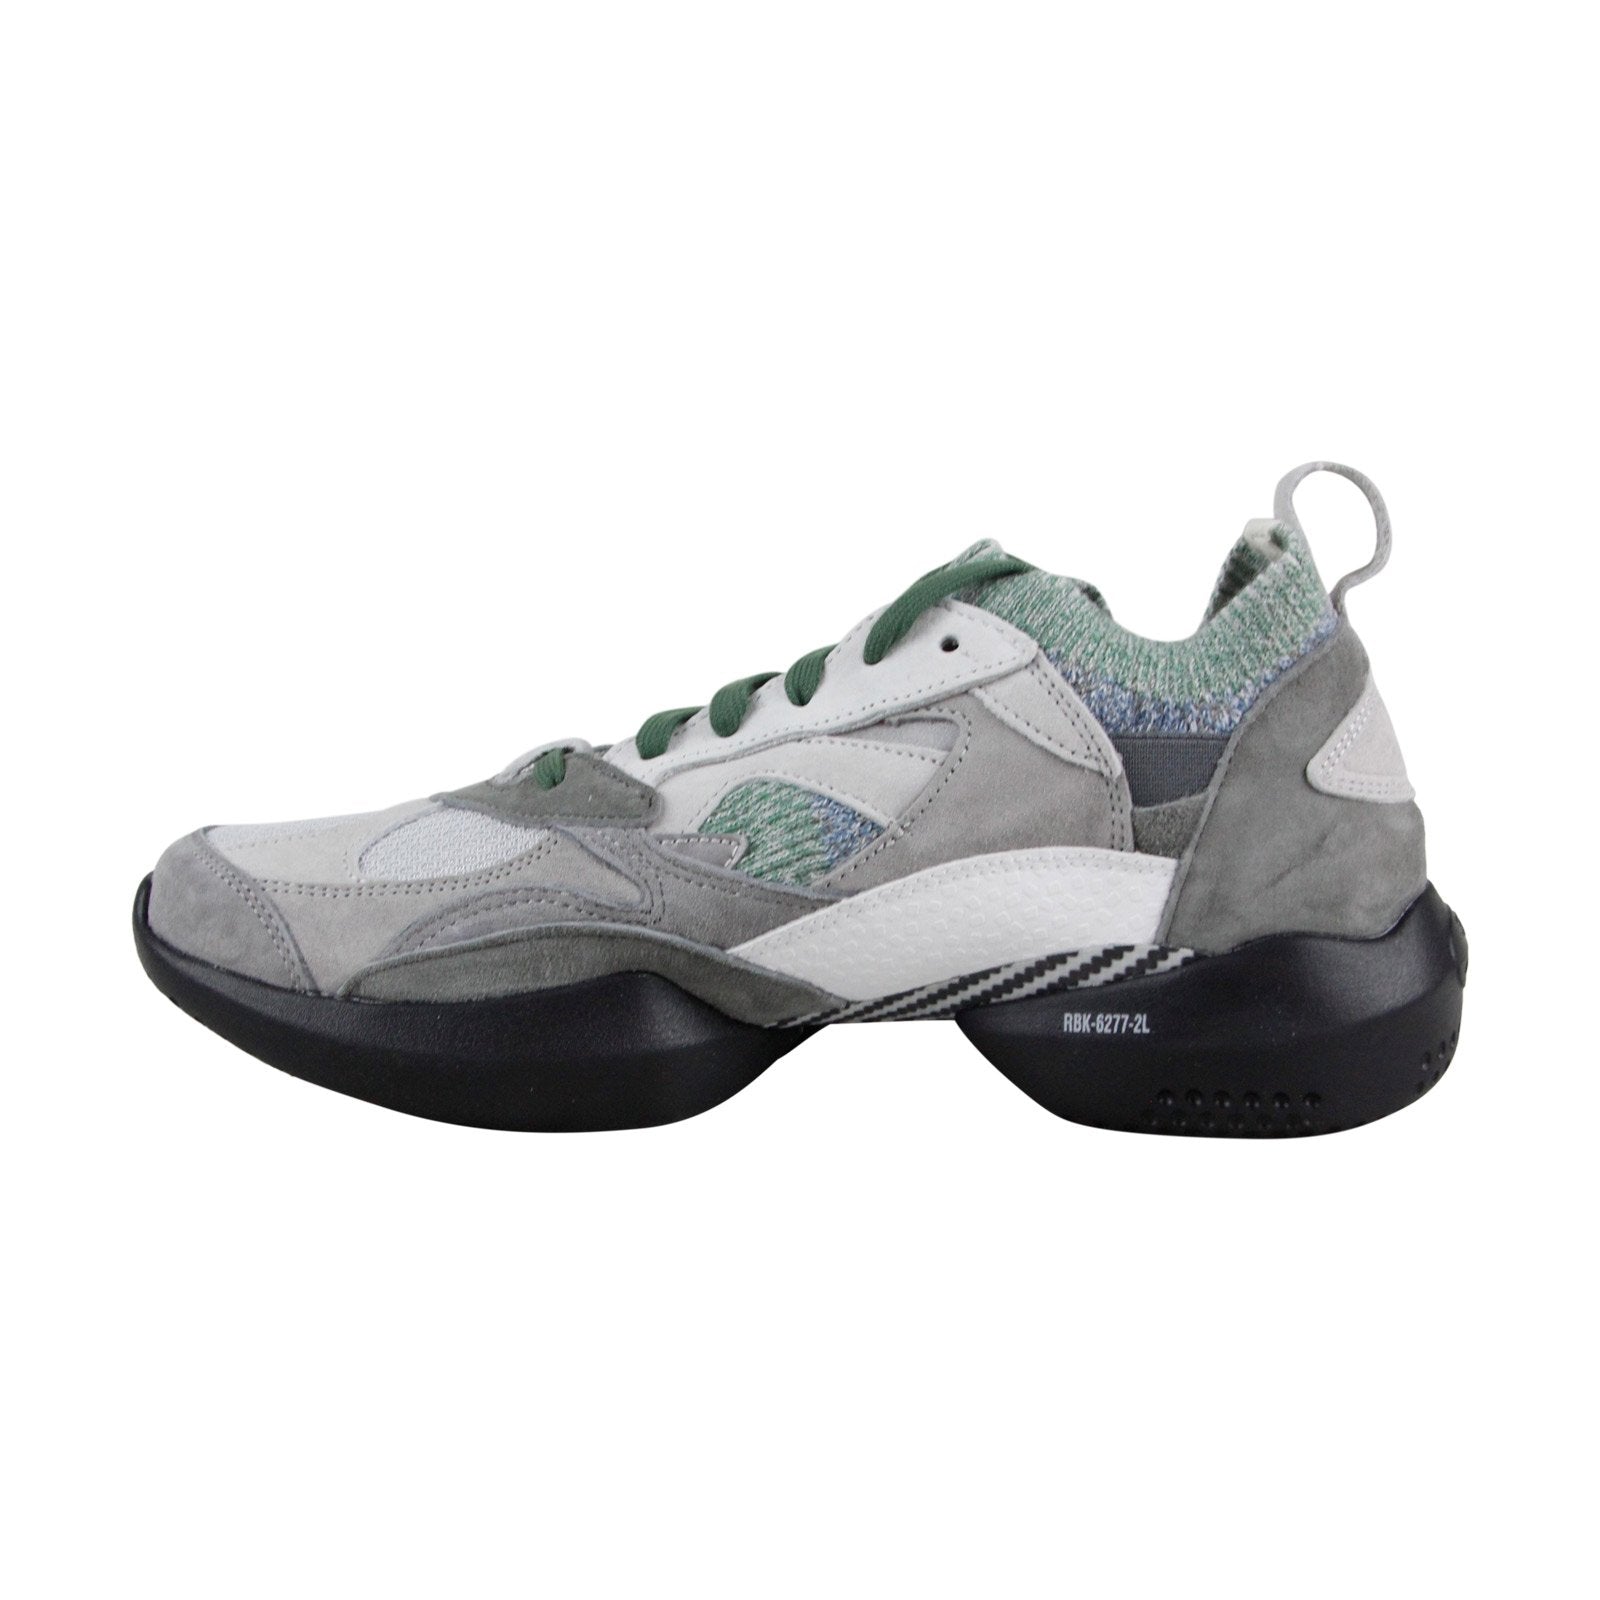 Espacio cibernético Lugar de nacimiento retorta Reebok 3D Op. Pro CN3910 Mens Gray Suede Lace Up Lifestyle Sneakers Sh -  Ruze Shoes